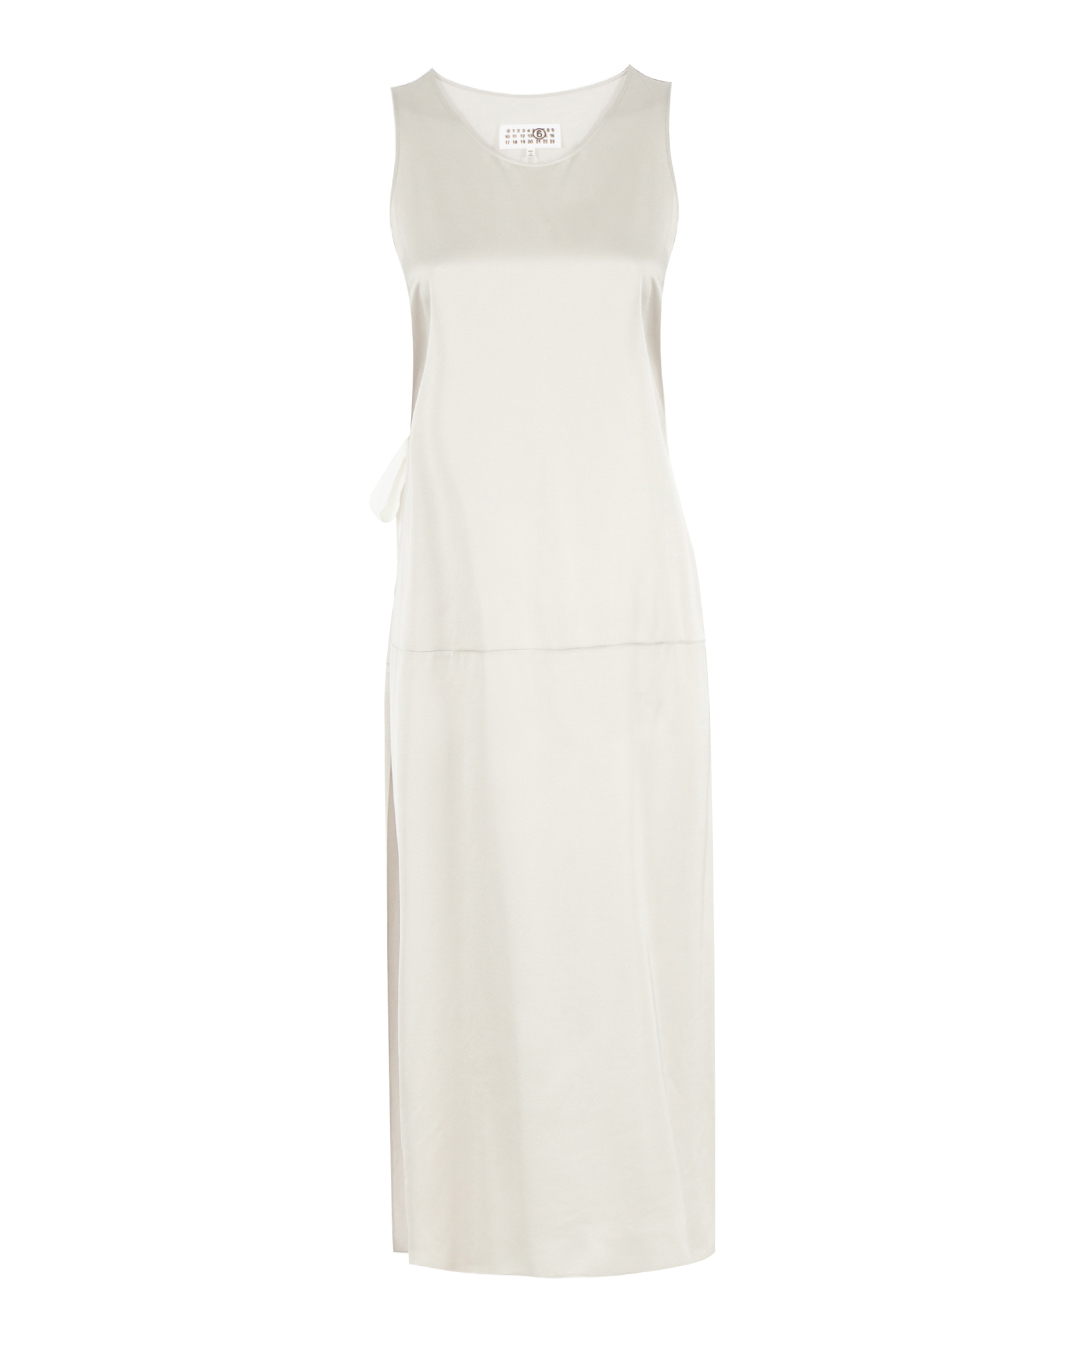 платье MM6 Maison Margiela S62DA0028 серый 40, размер 40